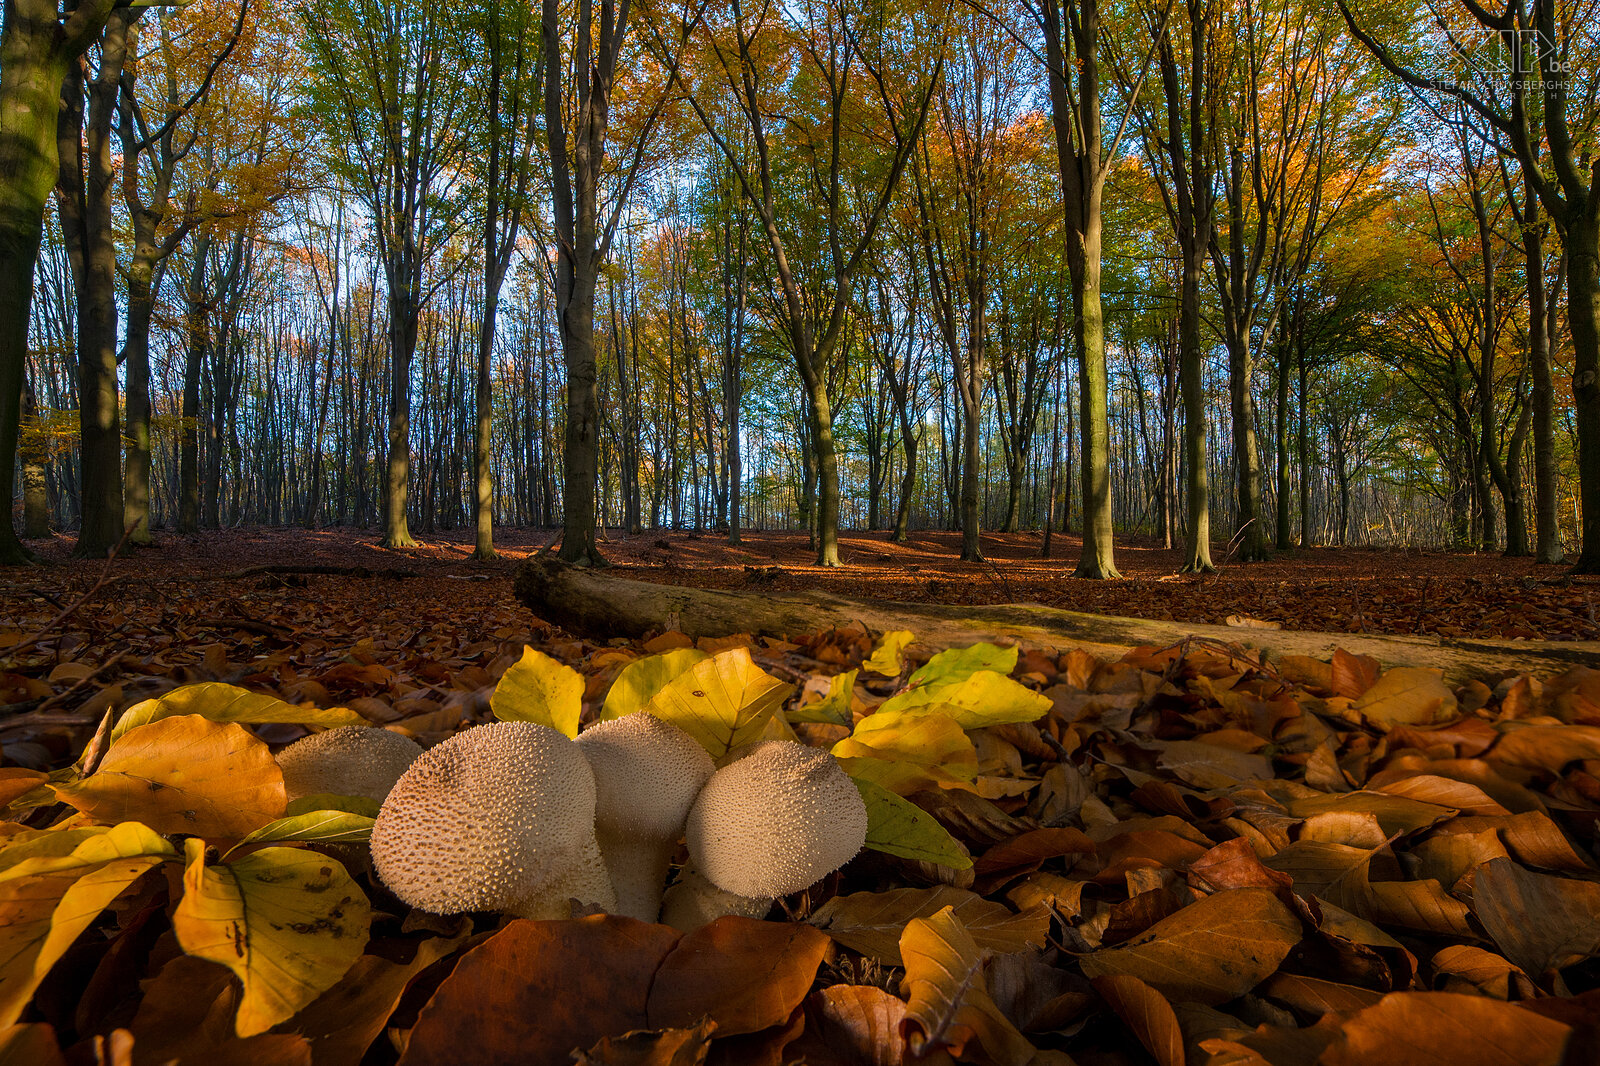 Herfst De herfst is een van de mooiste seizoenen in de natuur. Hierbij dan ook een kleine gevarieerde reeks herfstfoto's van paddestoelen en prachtige kleuren in de bossen in Scherpenheuvel en Holsbeek. Stefan Cruysberghs